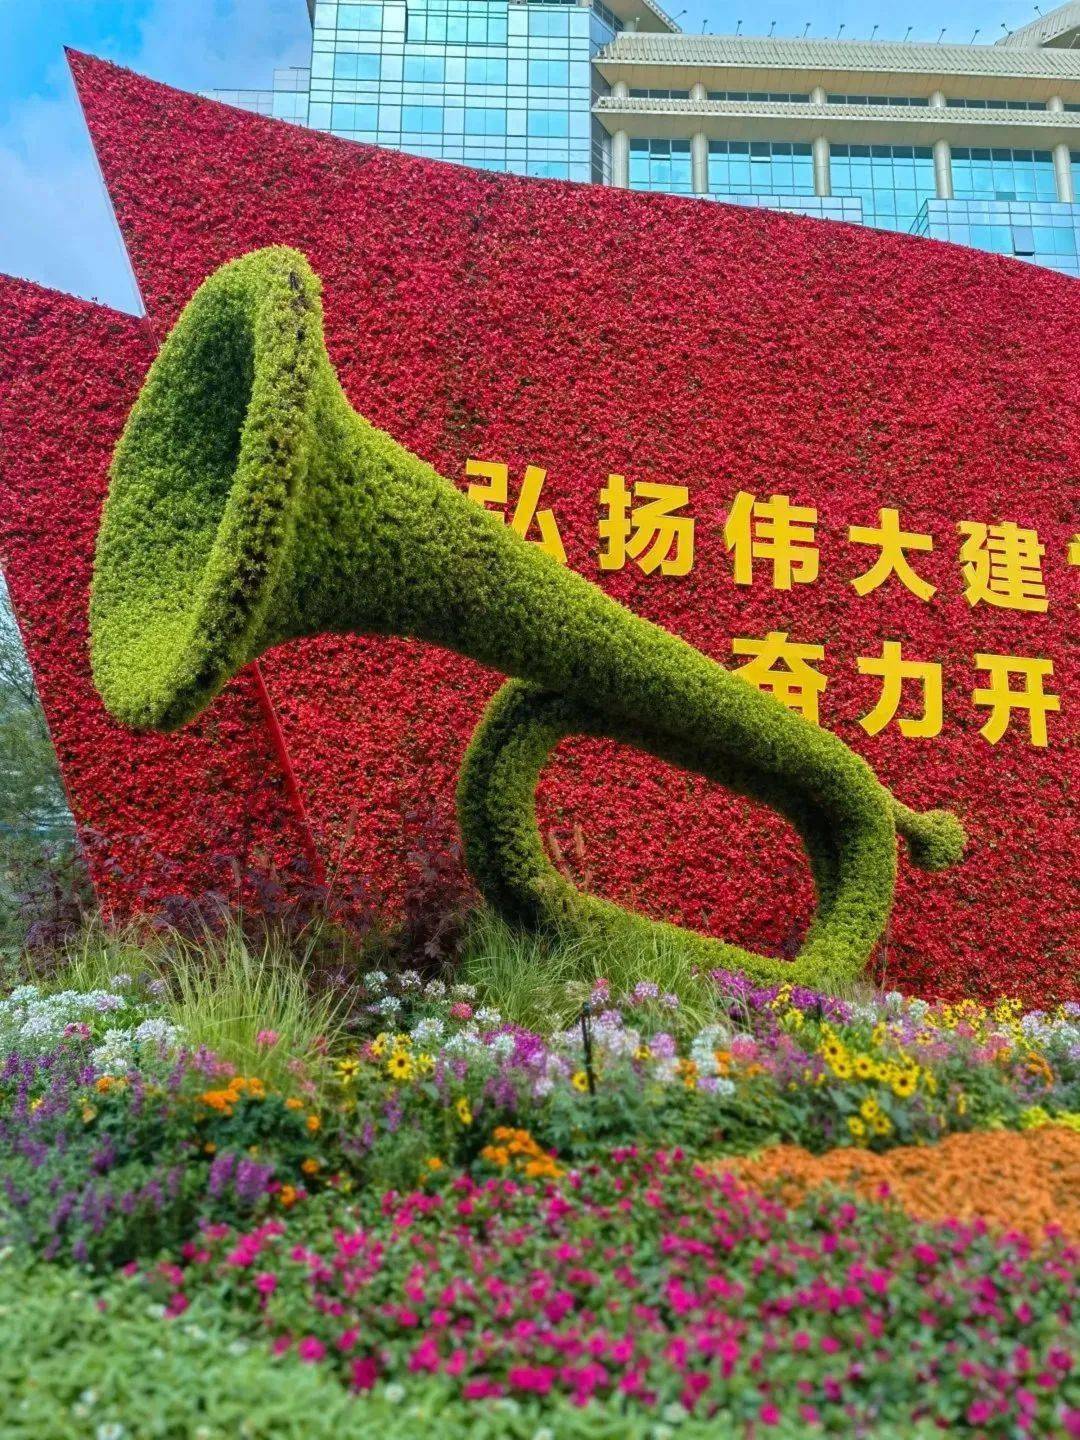 祝福祖国 | 200余个植物品种扮靓长安街主题花坛